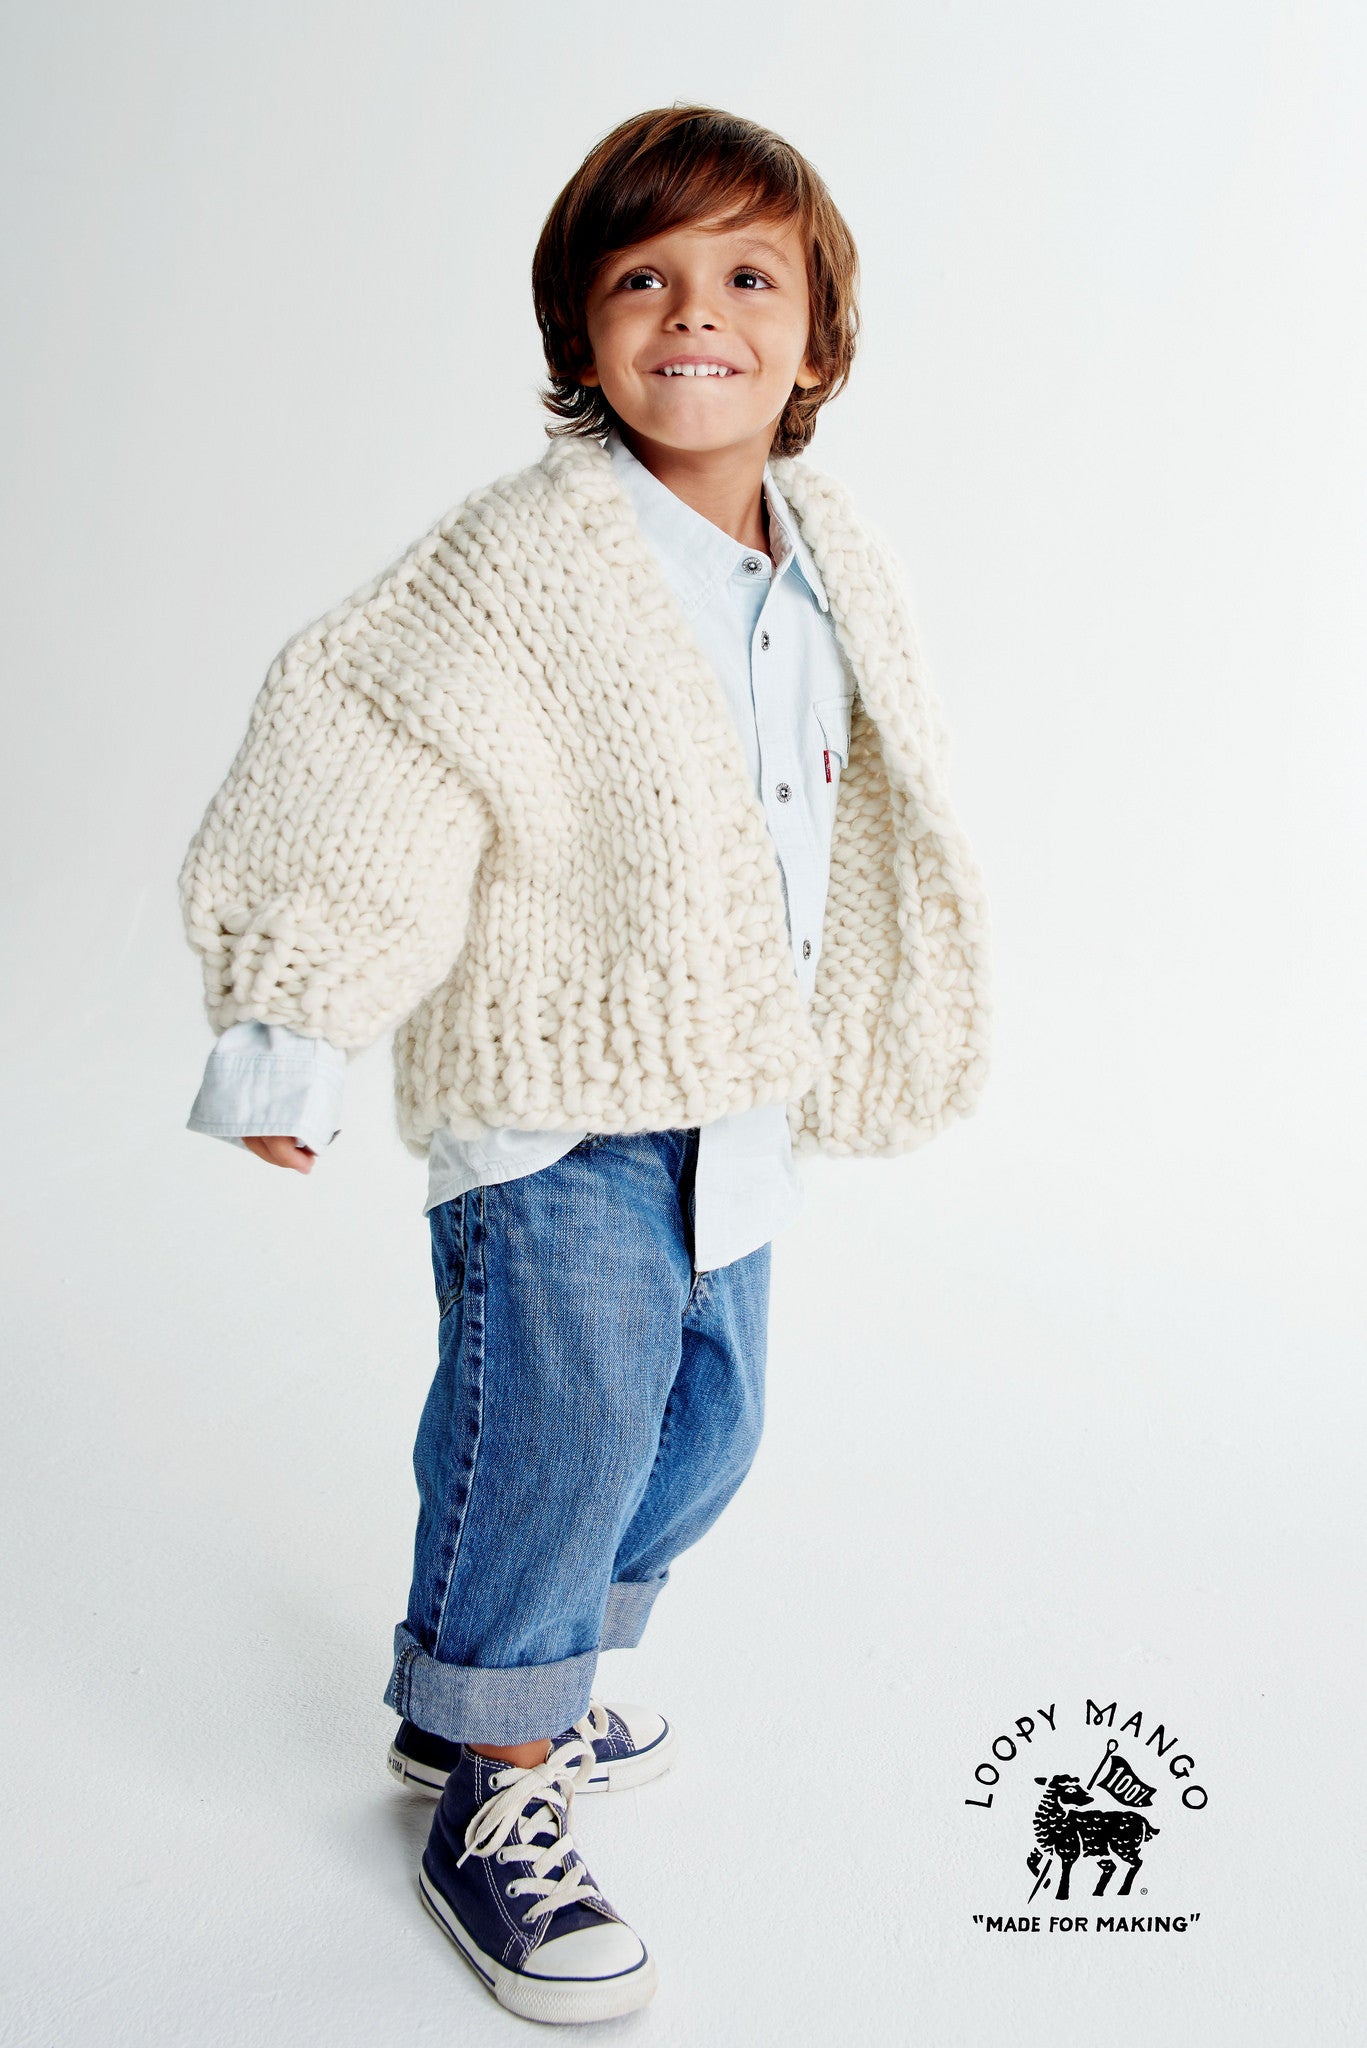 DIY Kit - Mini Cardigan Size 6-18 months, 1-4 years old - Merino No. 5